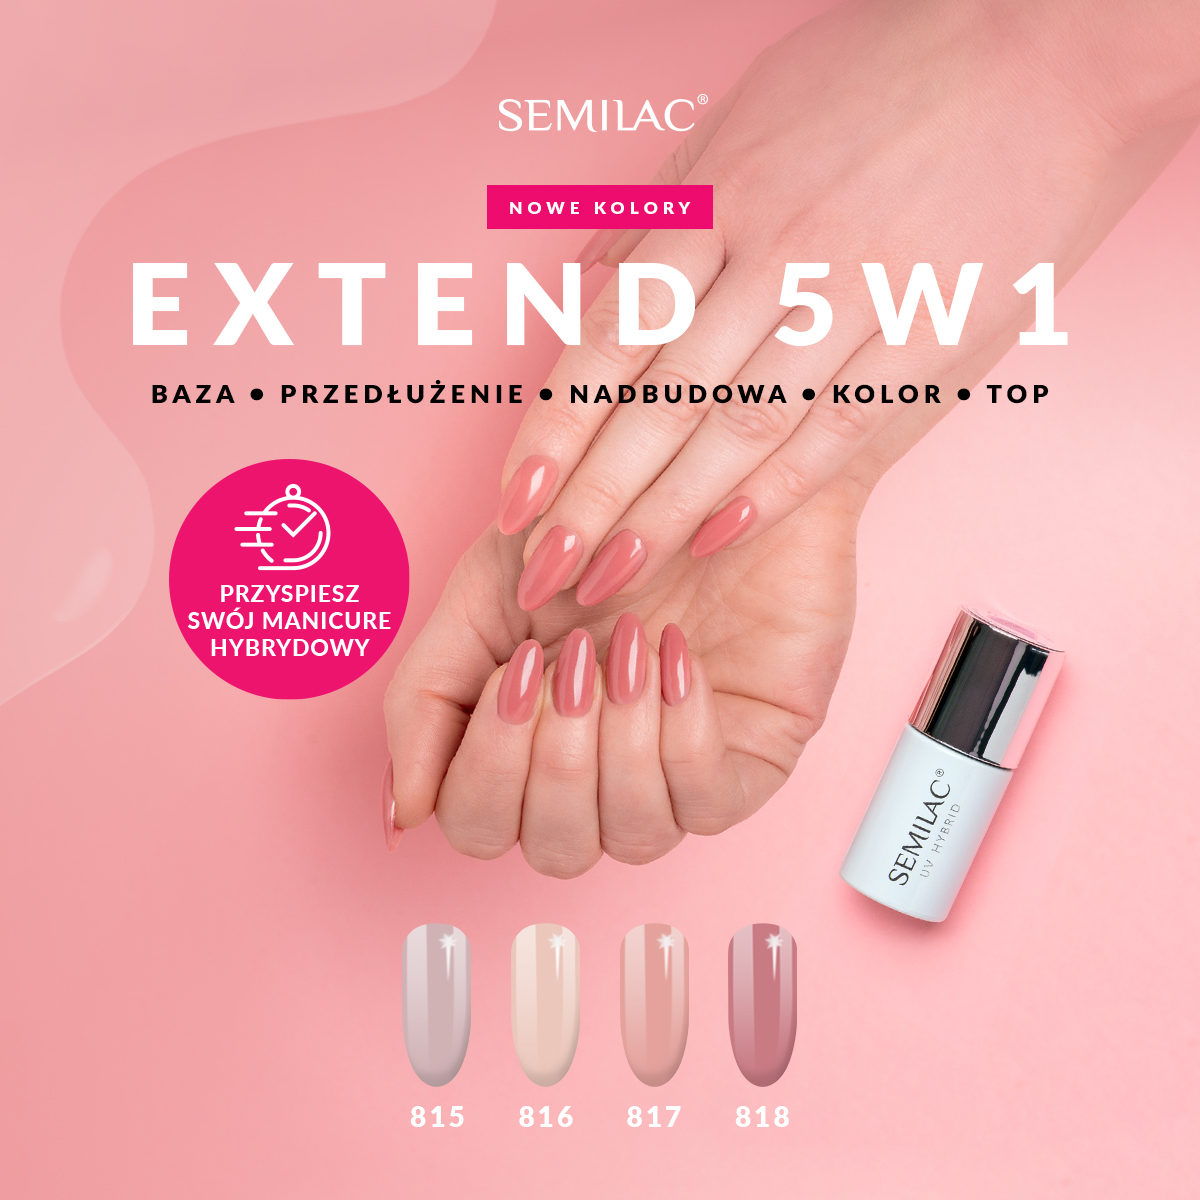 Nowe kolory innowacyjnej hybrydy do paznokci - Semilac Extend 5w1!